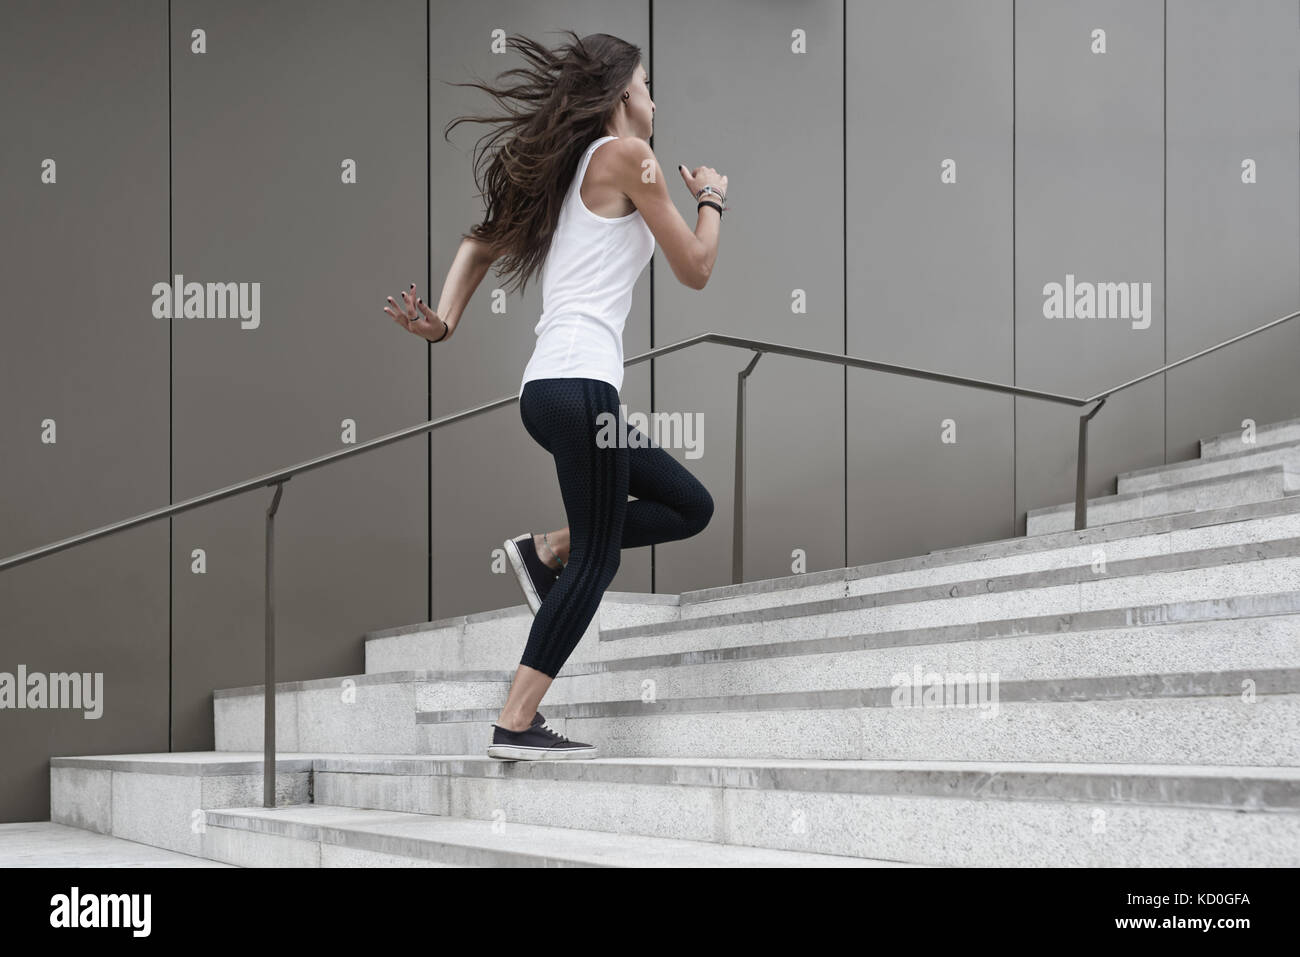 Jeune femme en train d'accumuler des mesures, low angle view Banque D'Images